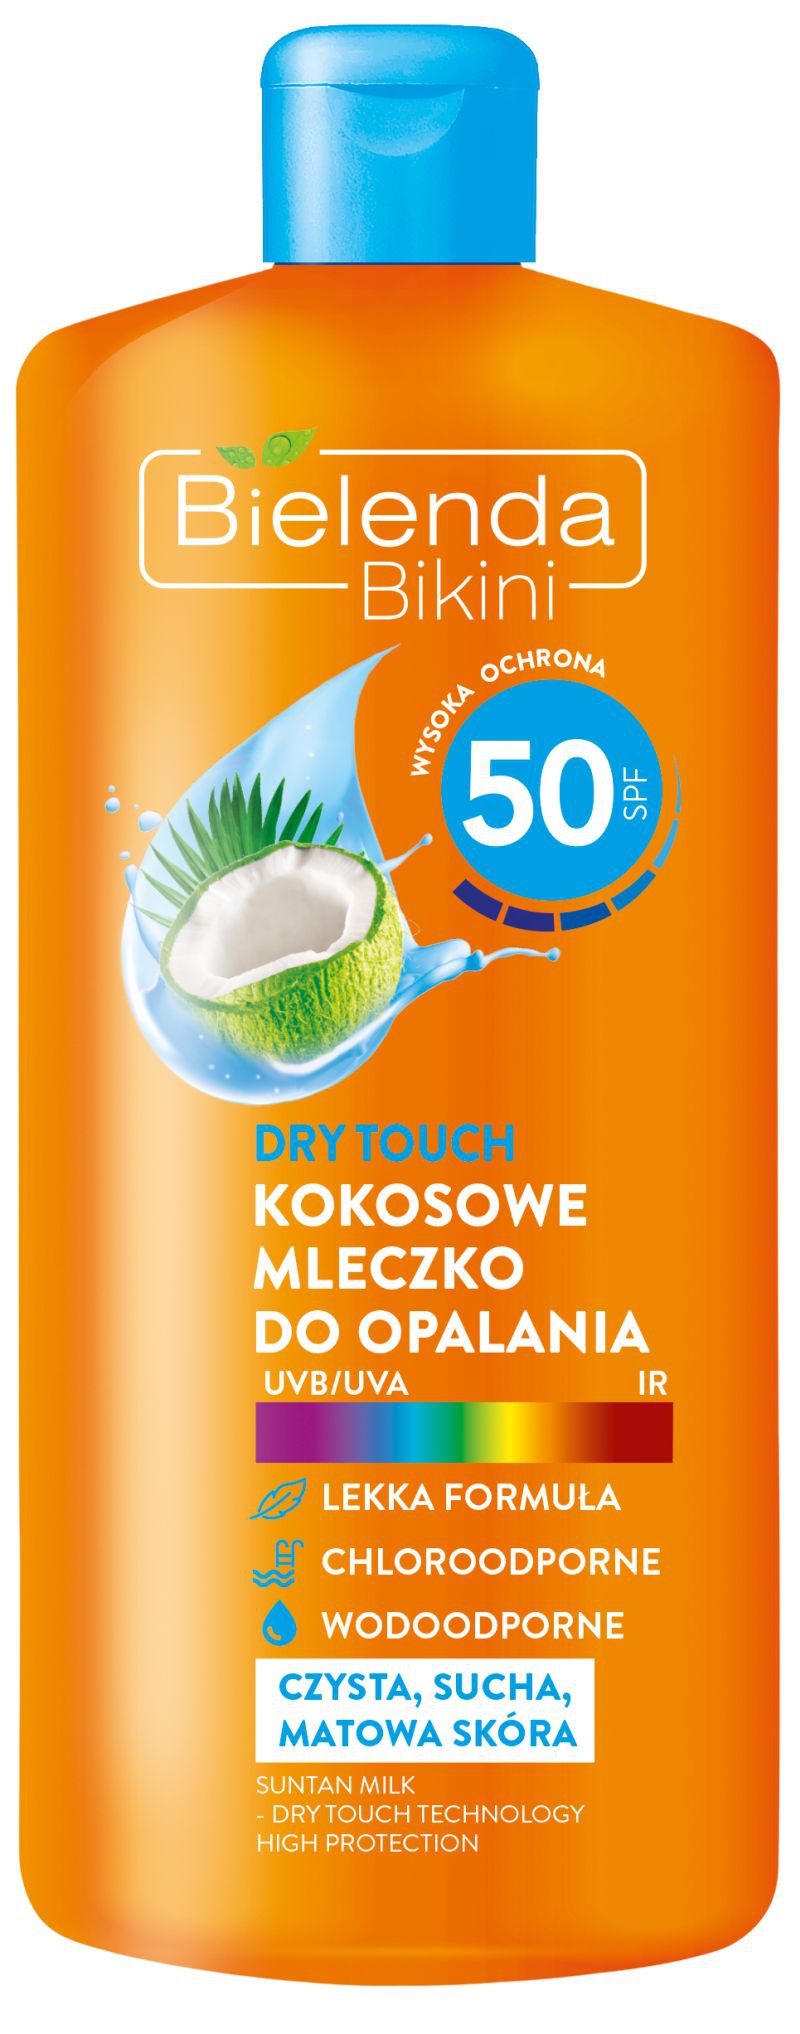 Bielenda Bikini Kokosowe Mleczko Do Opalania Z Technologią Dry Touch Spf 50